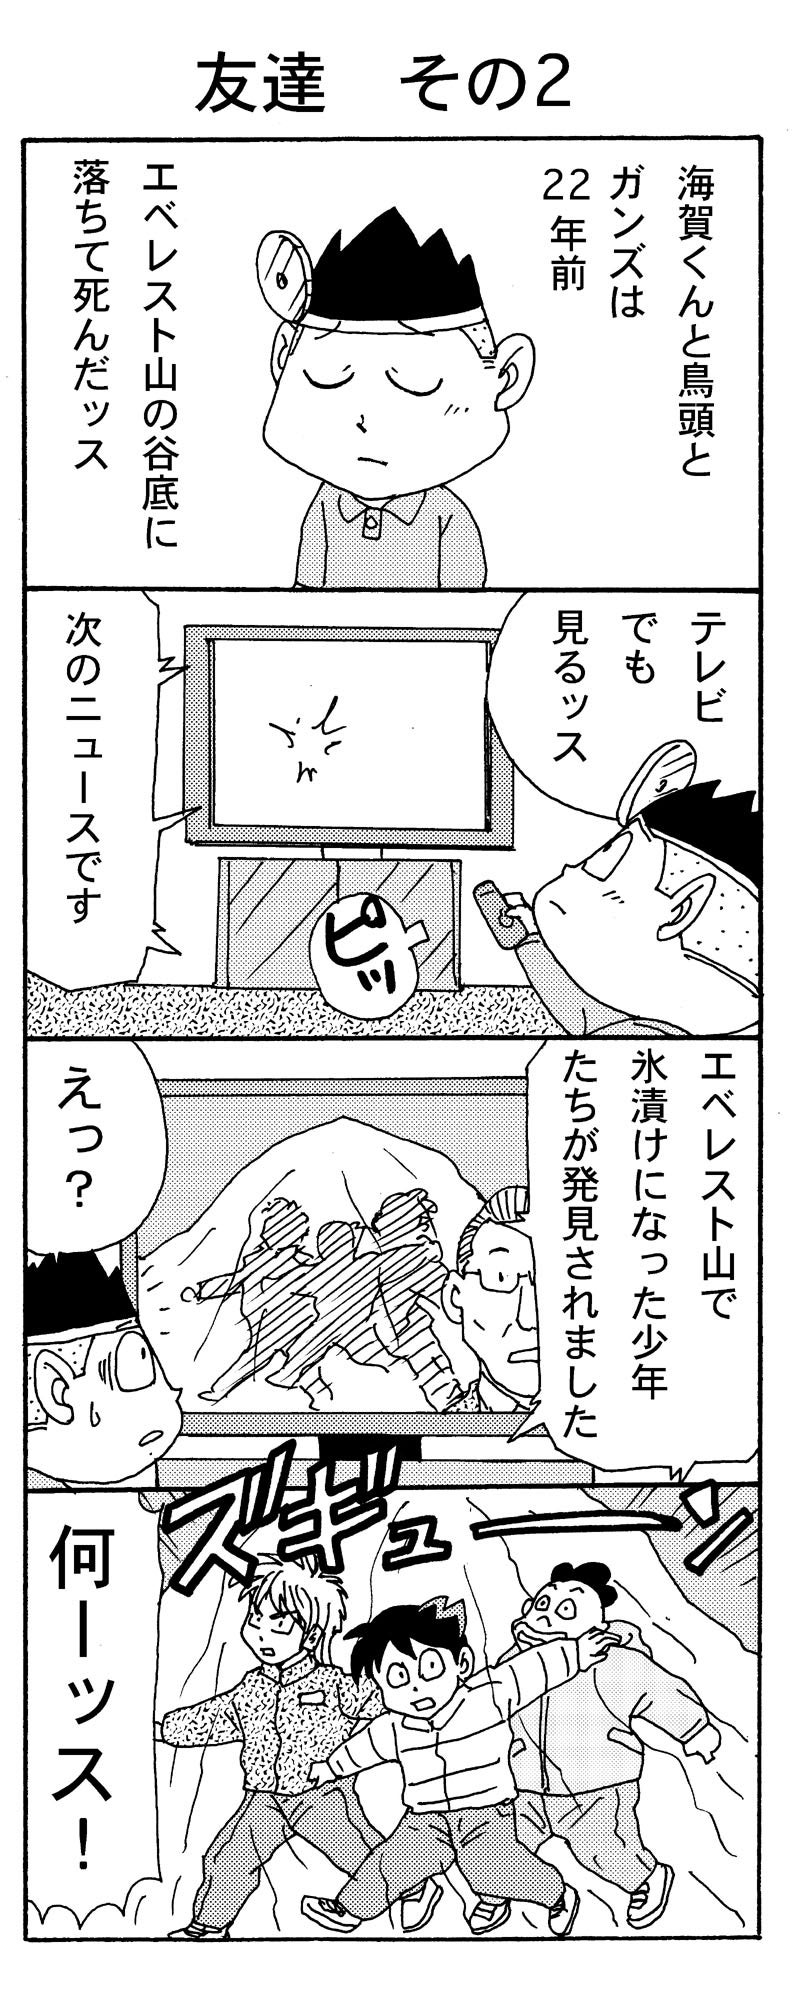 電撃ドクターモアイくん2 第２話 漫画家 岩村俊哉 オフィシャルブログ イワムランド